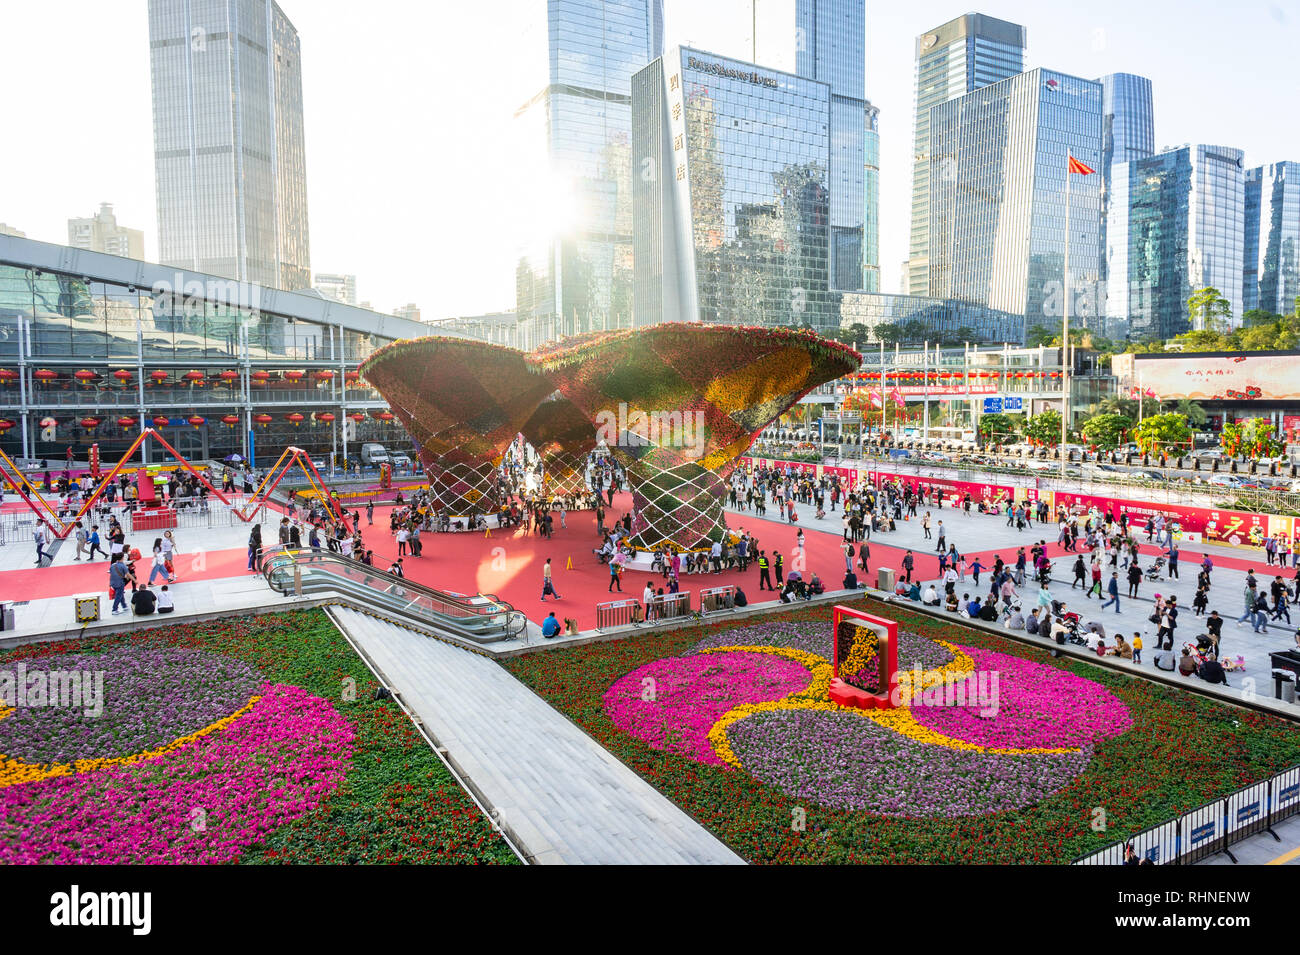 Große Blume Struktur Anzeige an das chinesische Neujahr Blumen Messe in Shenzhen, China. Stockfoto